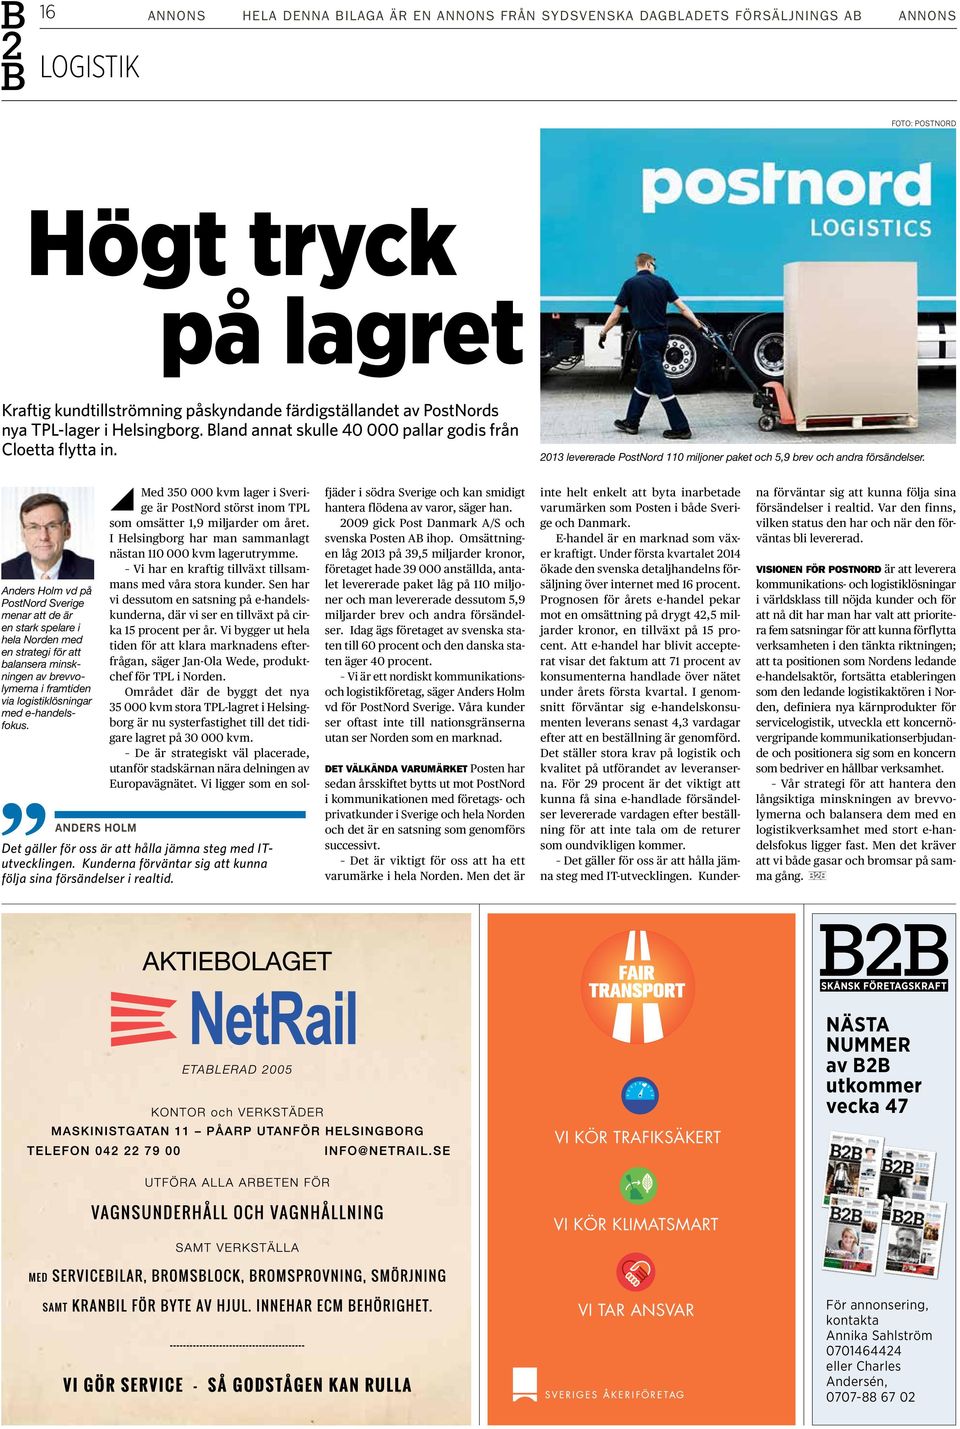 Anders Holm vd på PostNord Sverige menar att de är en stark spelare i hela Norden med en strategi för att balansera minskningen av brevvolymerna i framtiden via logistiklösningar med e-handelsfokus.